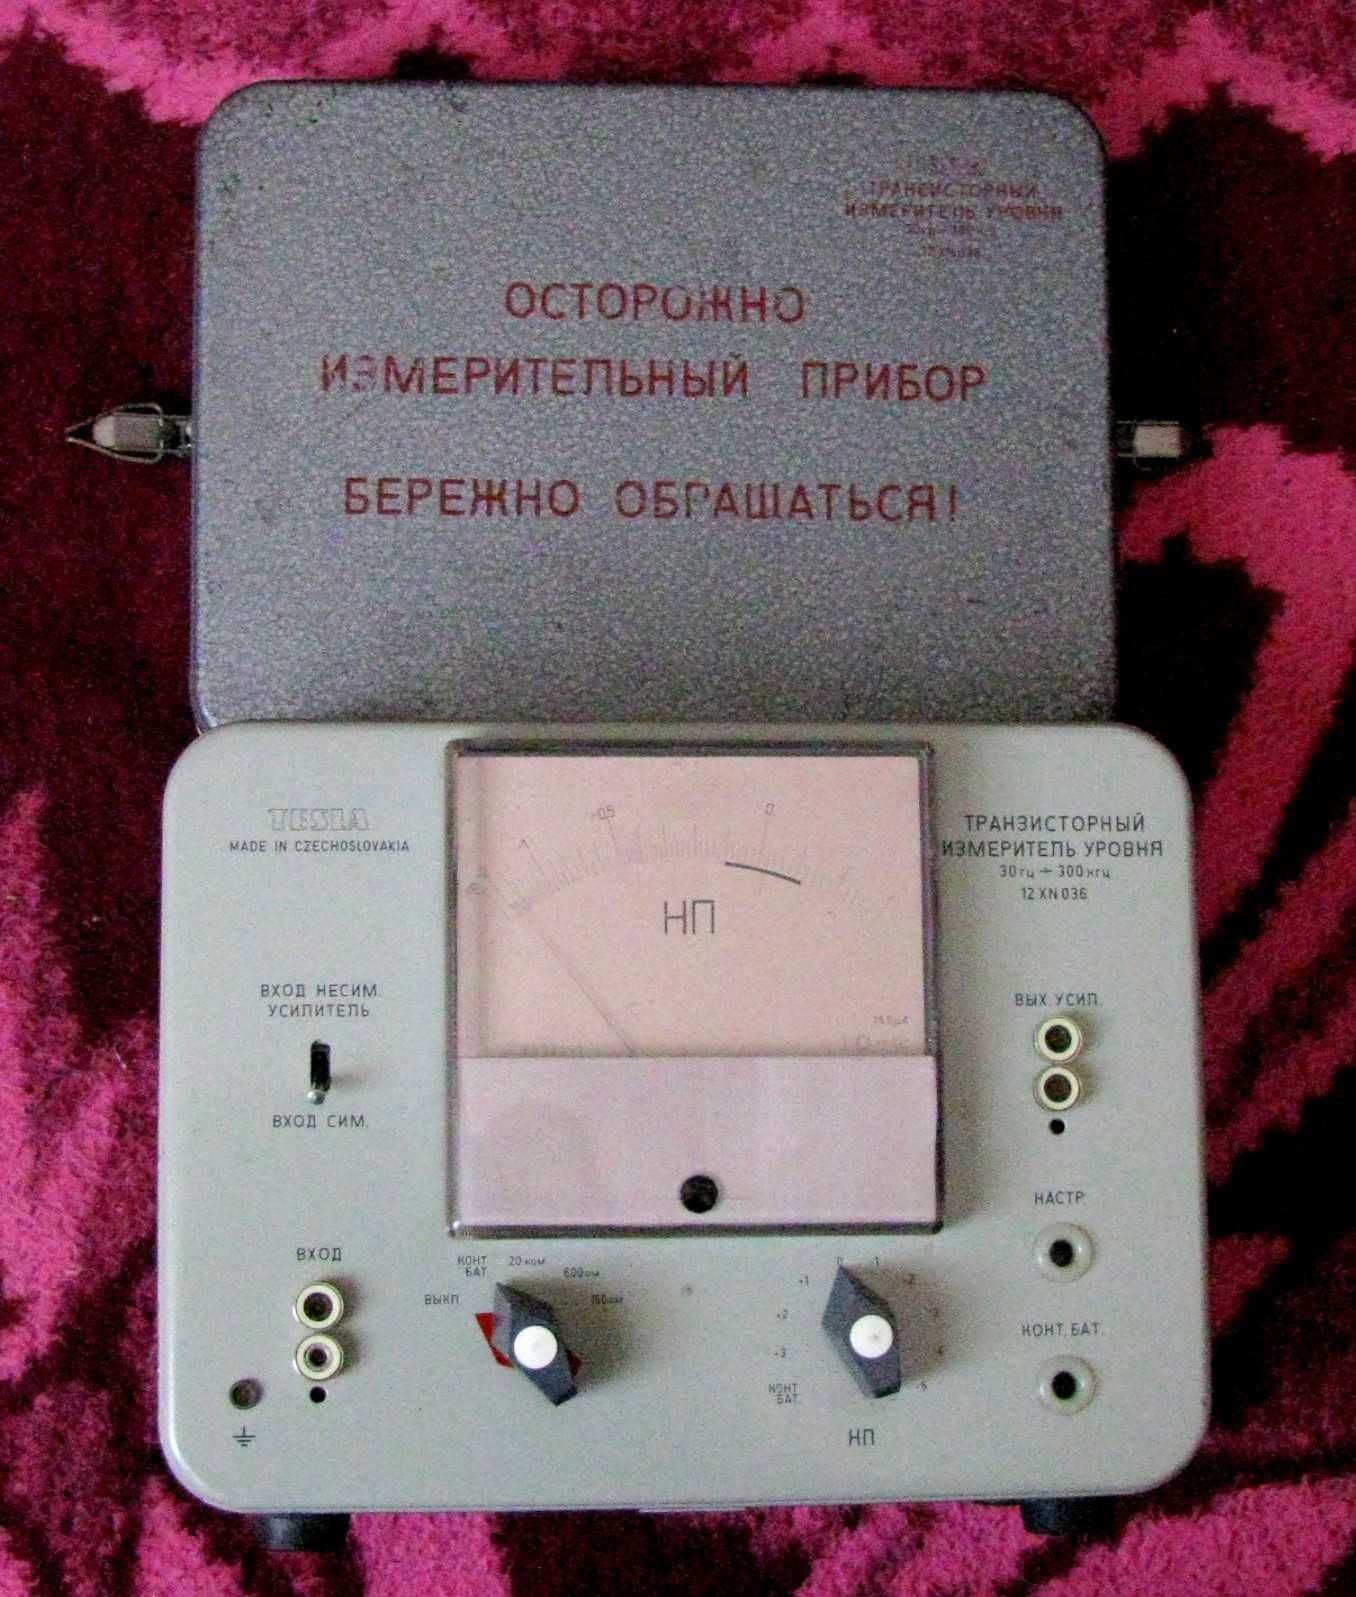 Усилитель уровня транзисторный, 12XN036, TESLA, прибор СССР.